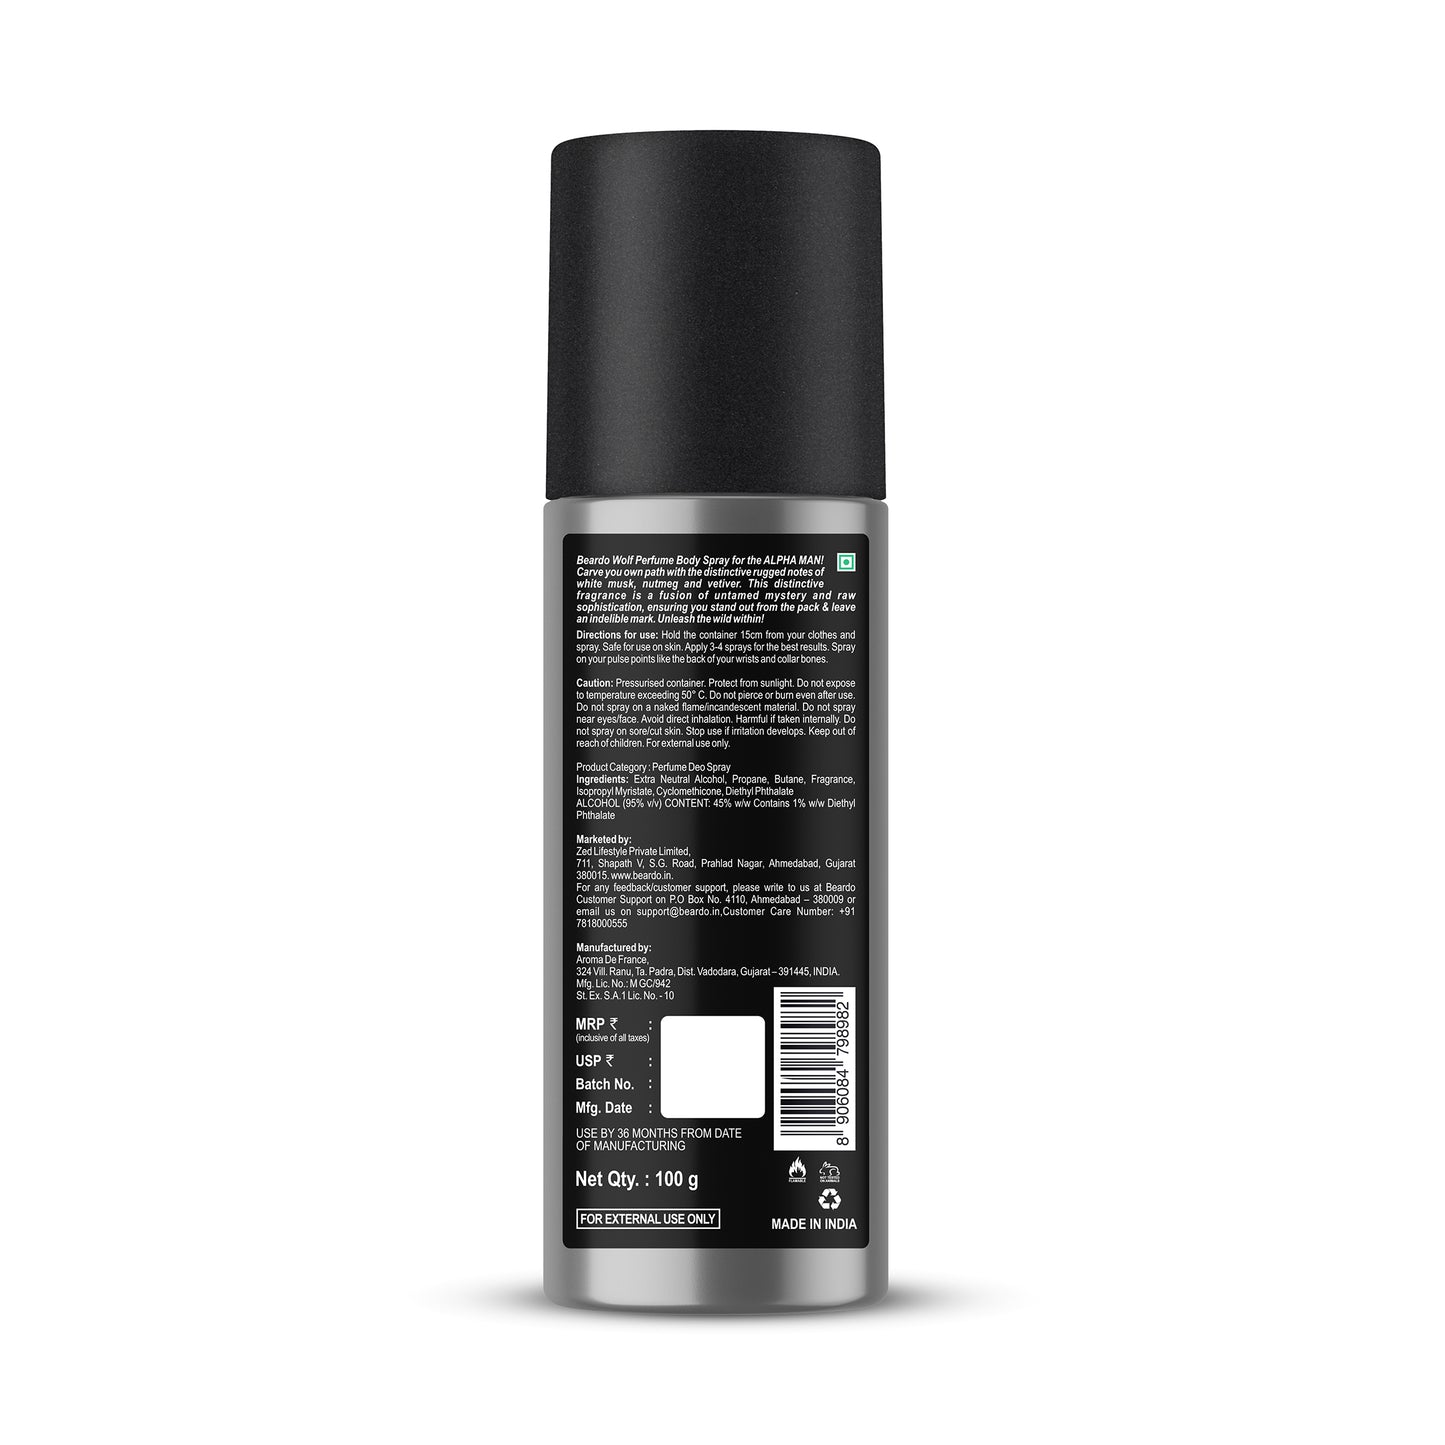 Beardo Wolf Perfume Deo Spray (150ml)